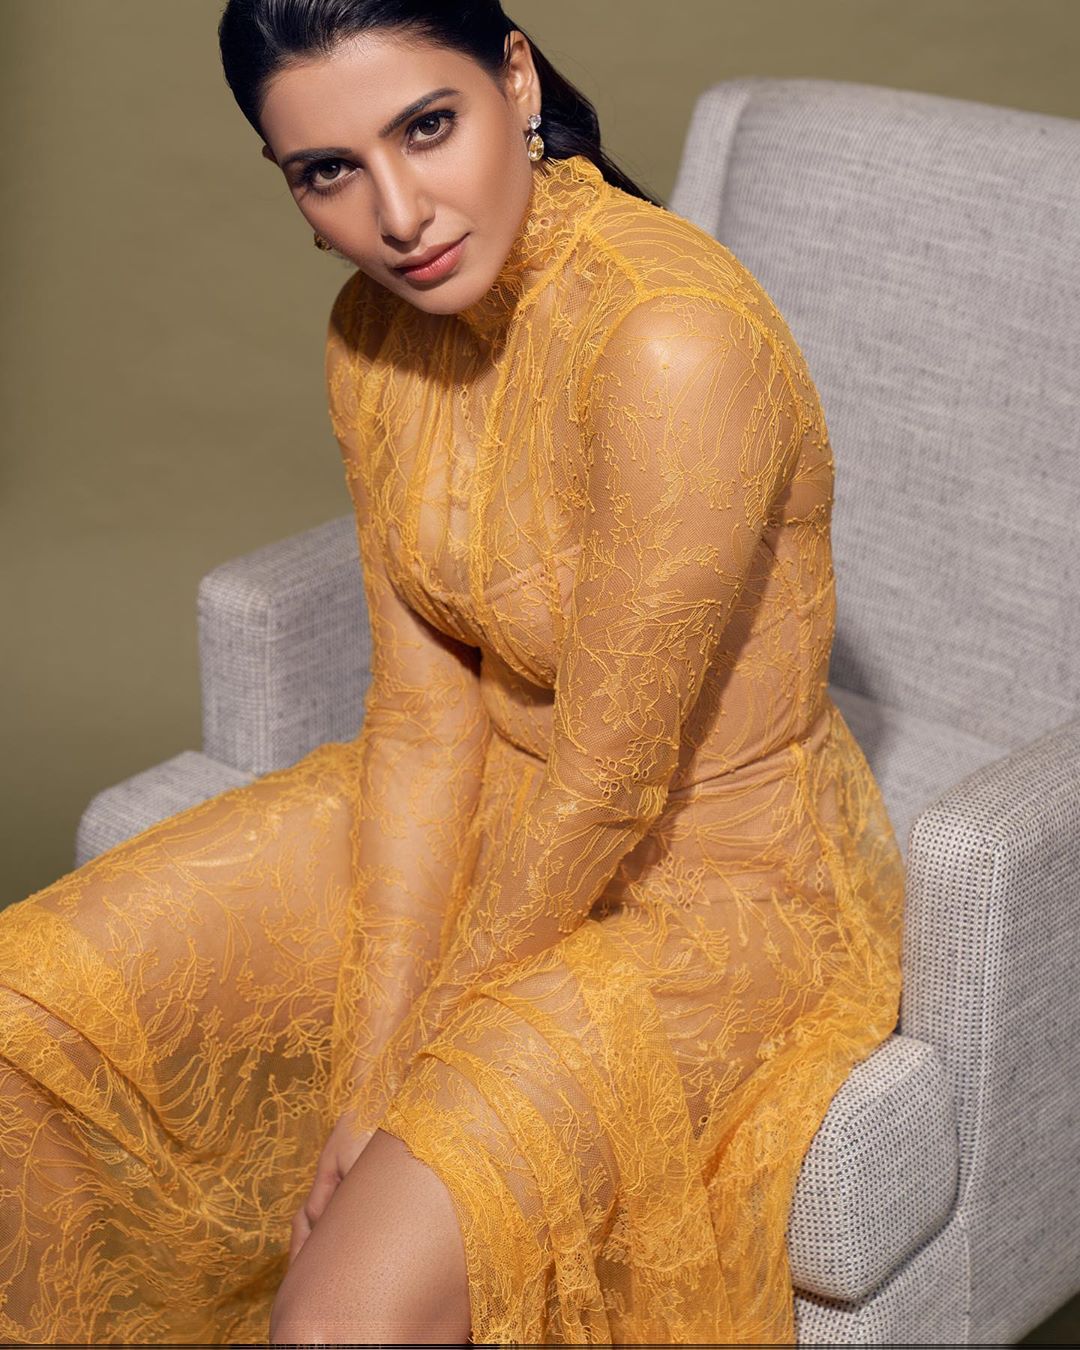 நீதானே என் பொன் வசந்தம்... ஹேப்பி பர்த்டே சமந்தா! | A collection of photos of the Actress Samantha on her Birthday special– News18 Tamil